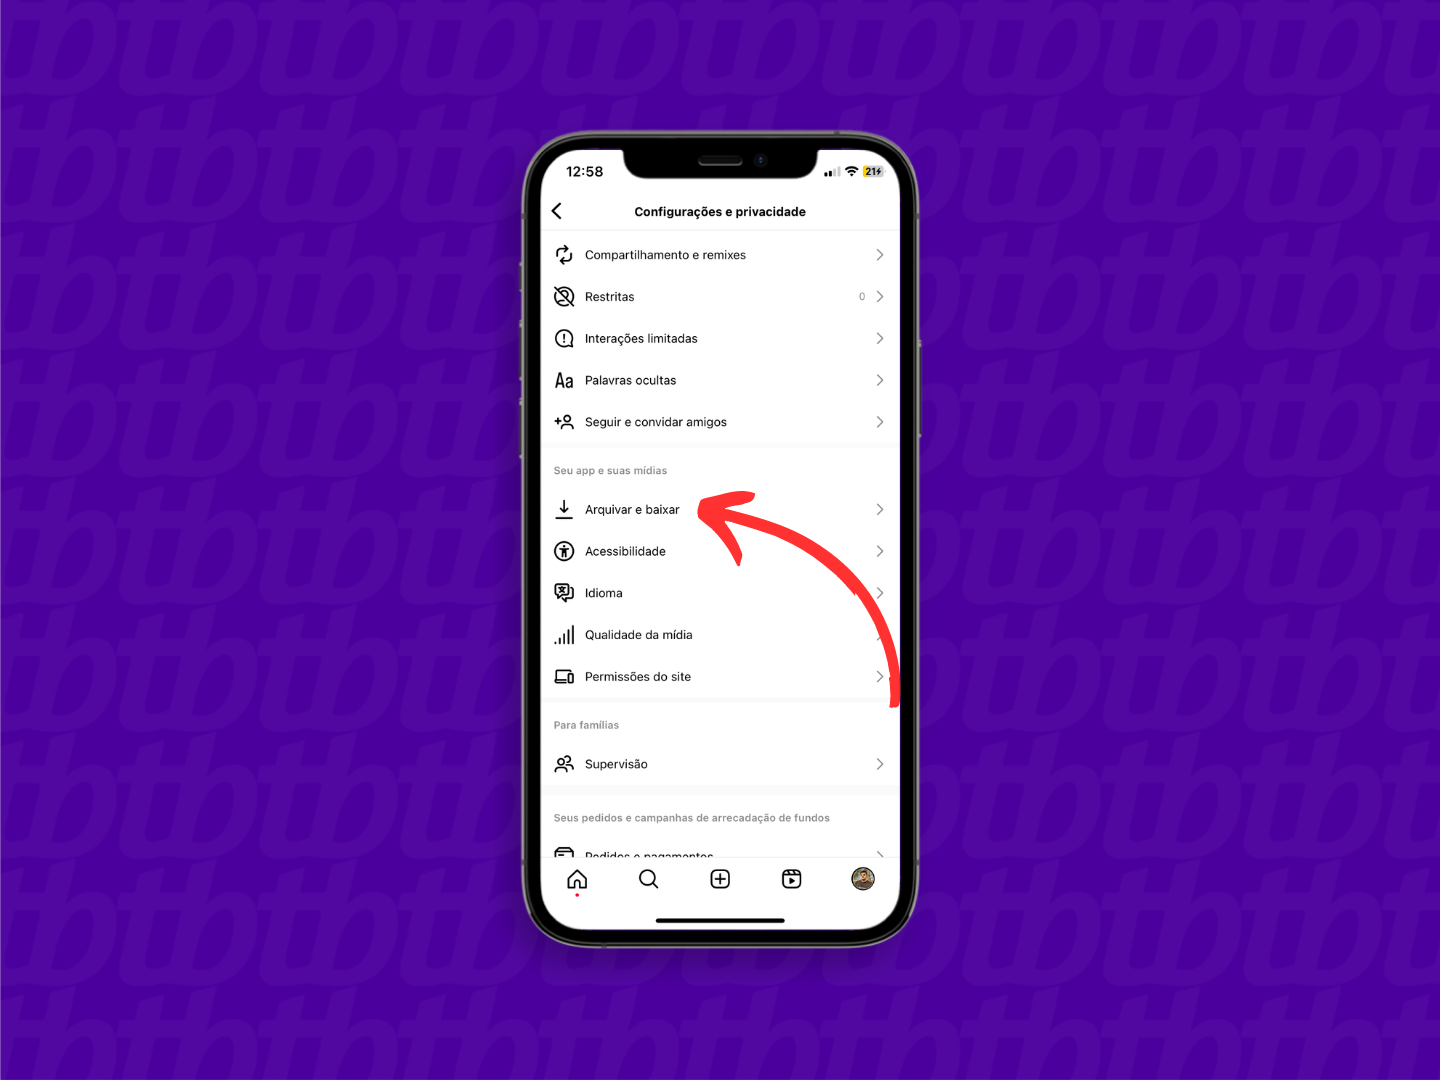 Mockup de celular com print de tela do Instagram que indica o menu "Arquivar e baixar".